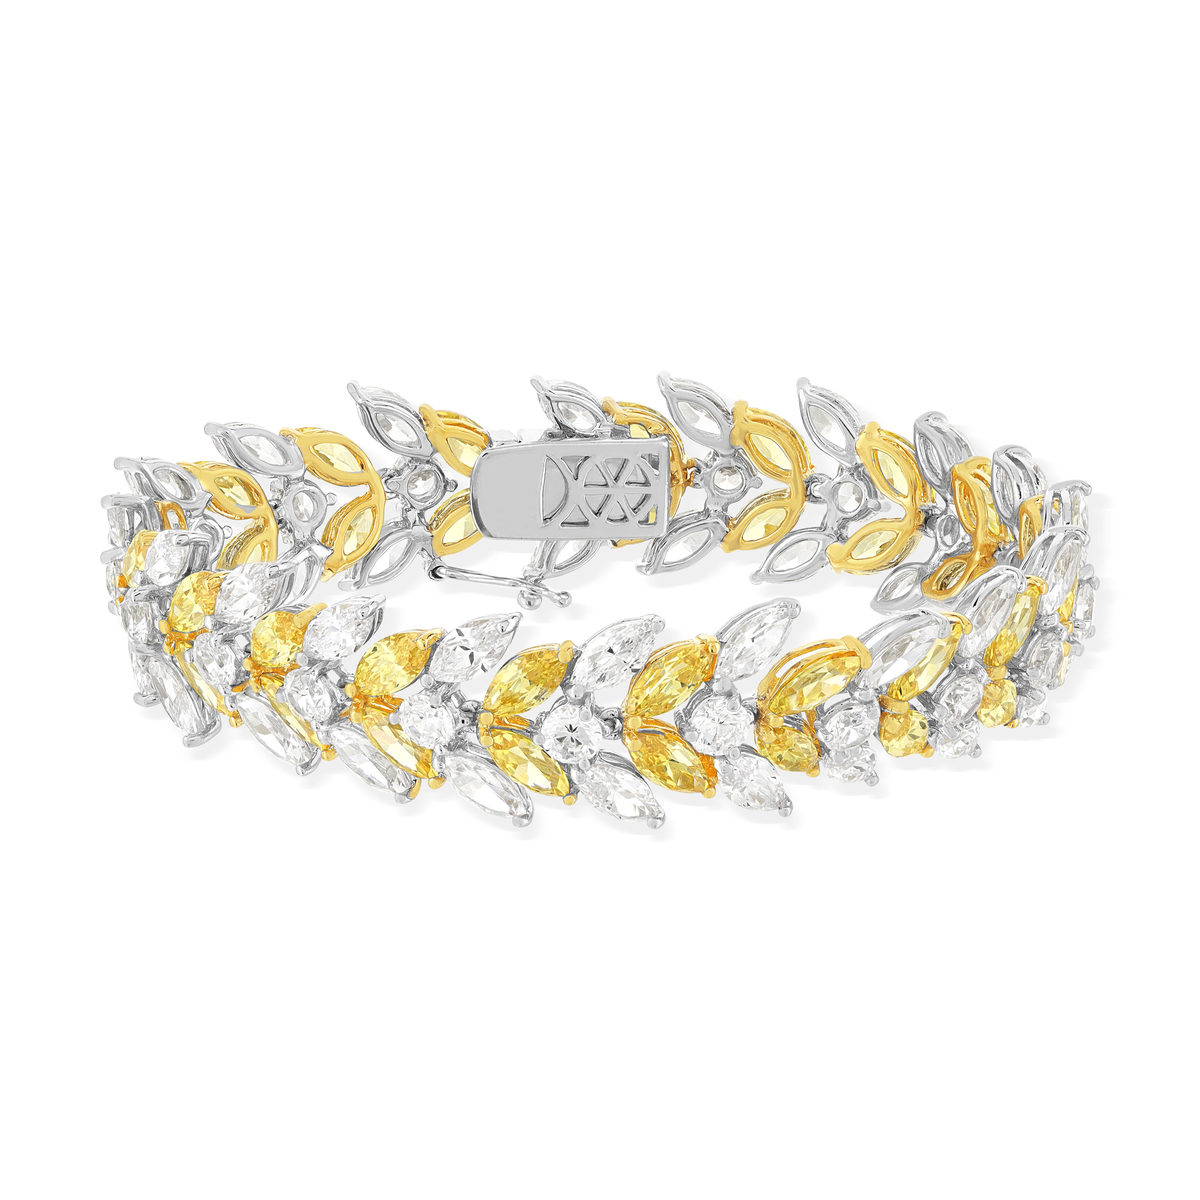 Bracelet argent 925, zirconias jaunes et blancs 18 cm - vue 2